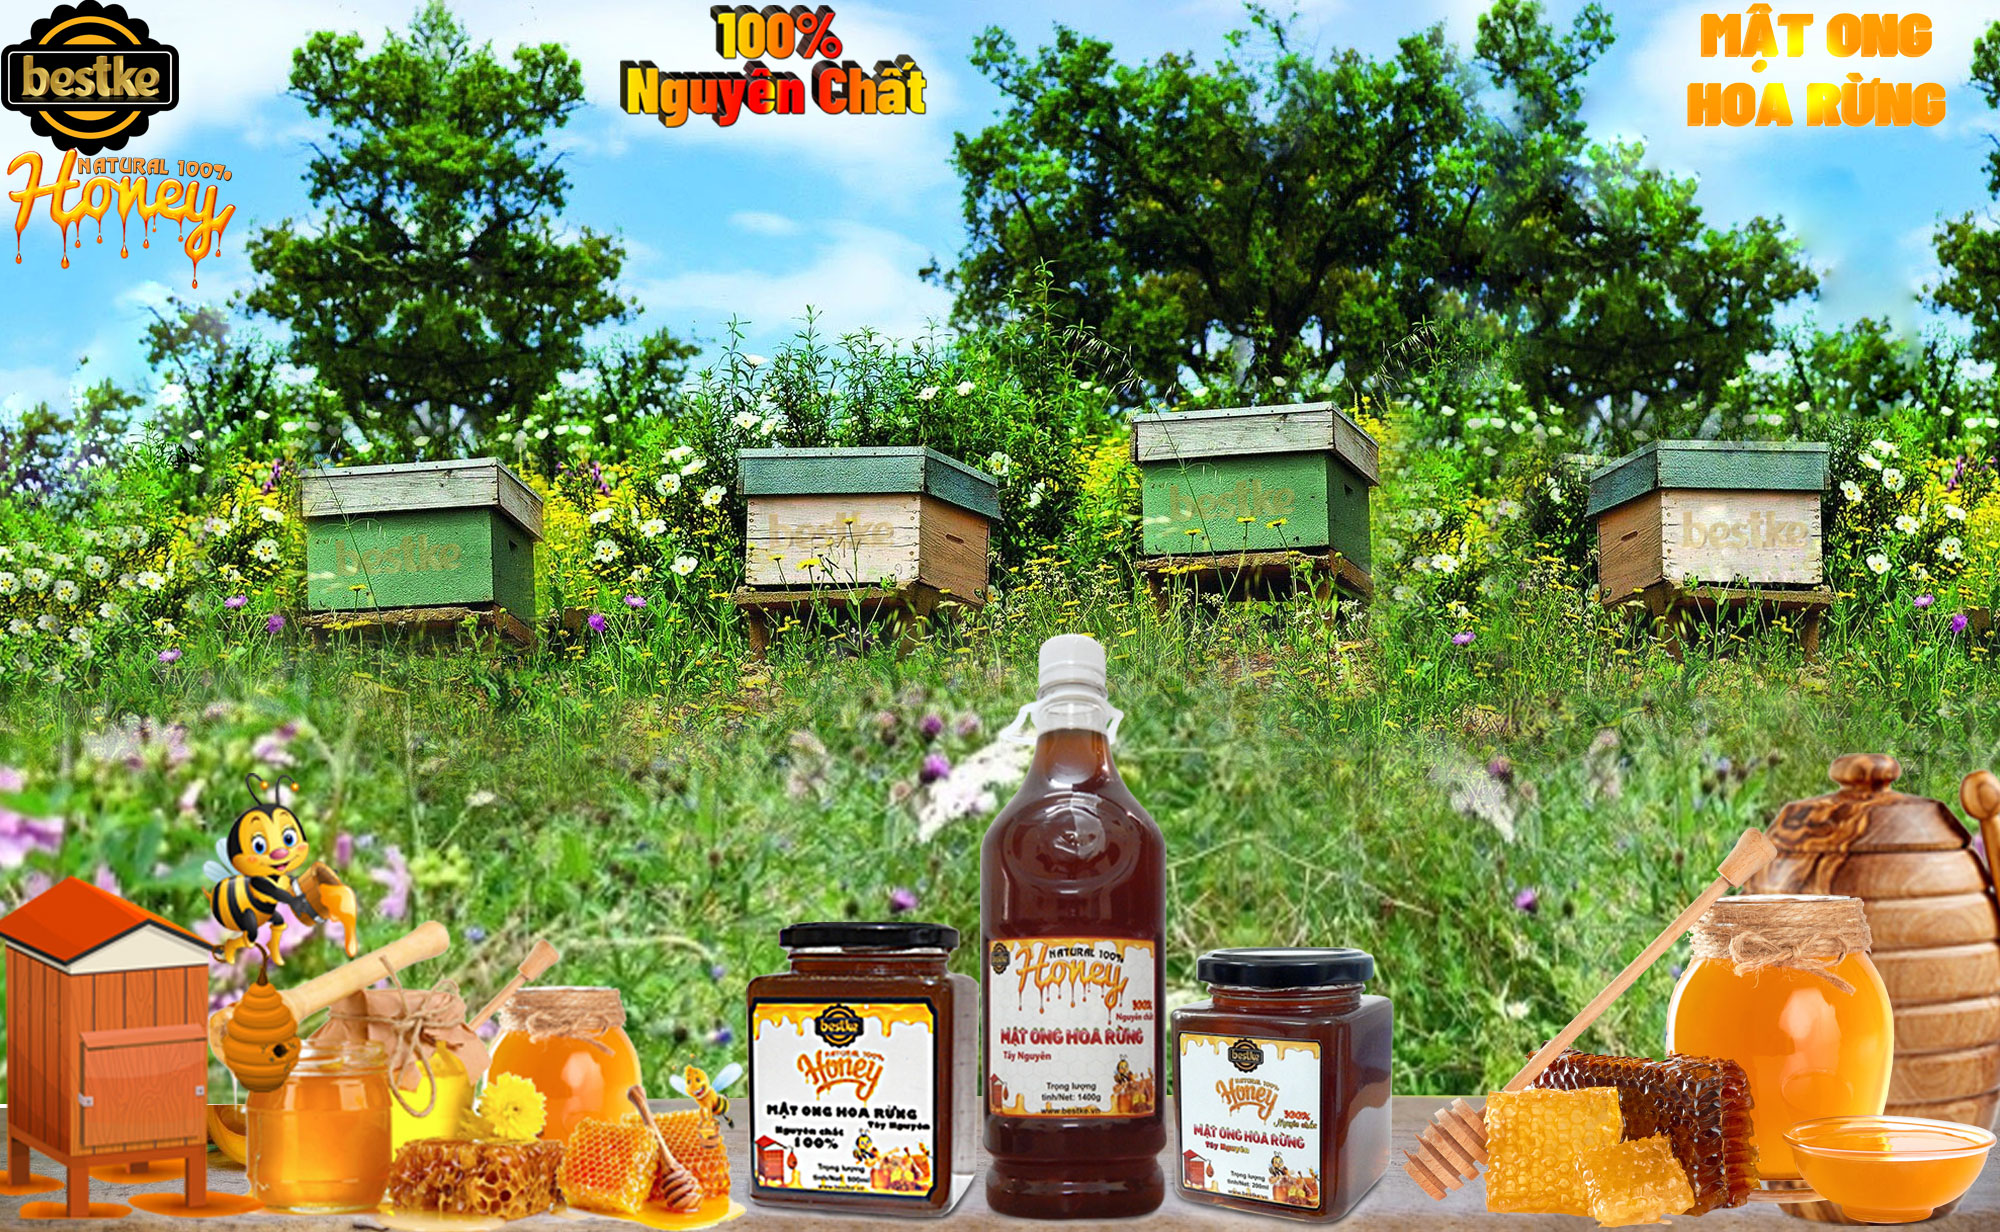 Mật ong hoa rừng Tây nguyên, nguyên chất, Hũ 200ml, 100% natural honey, Bestke